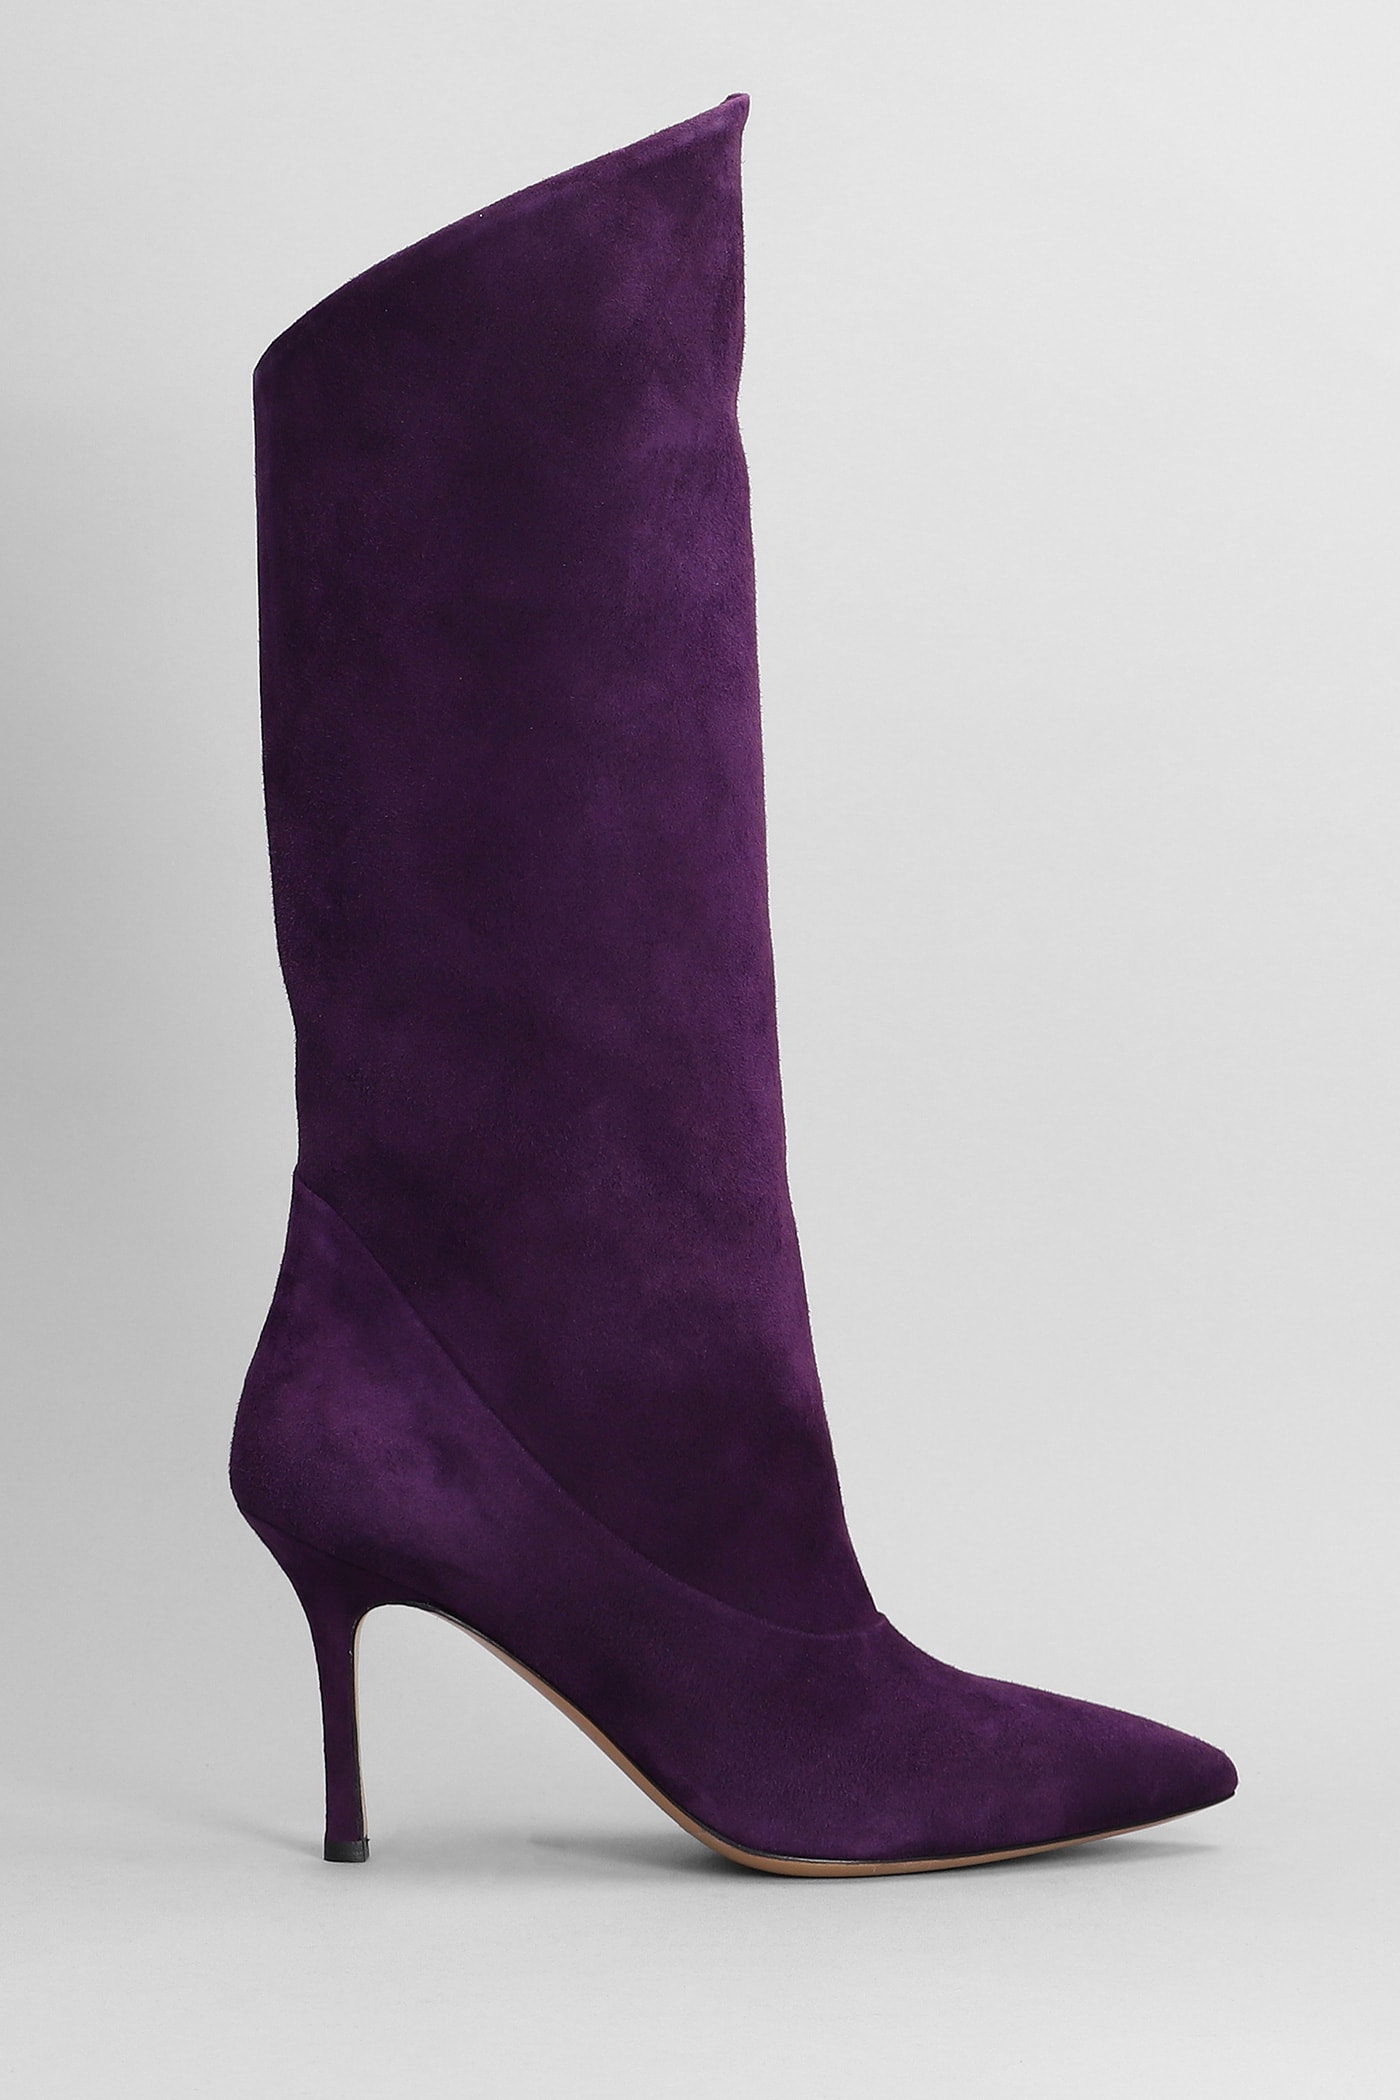 High Heels Boots In Viola Suede